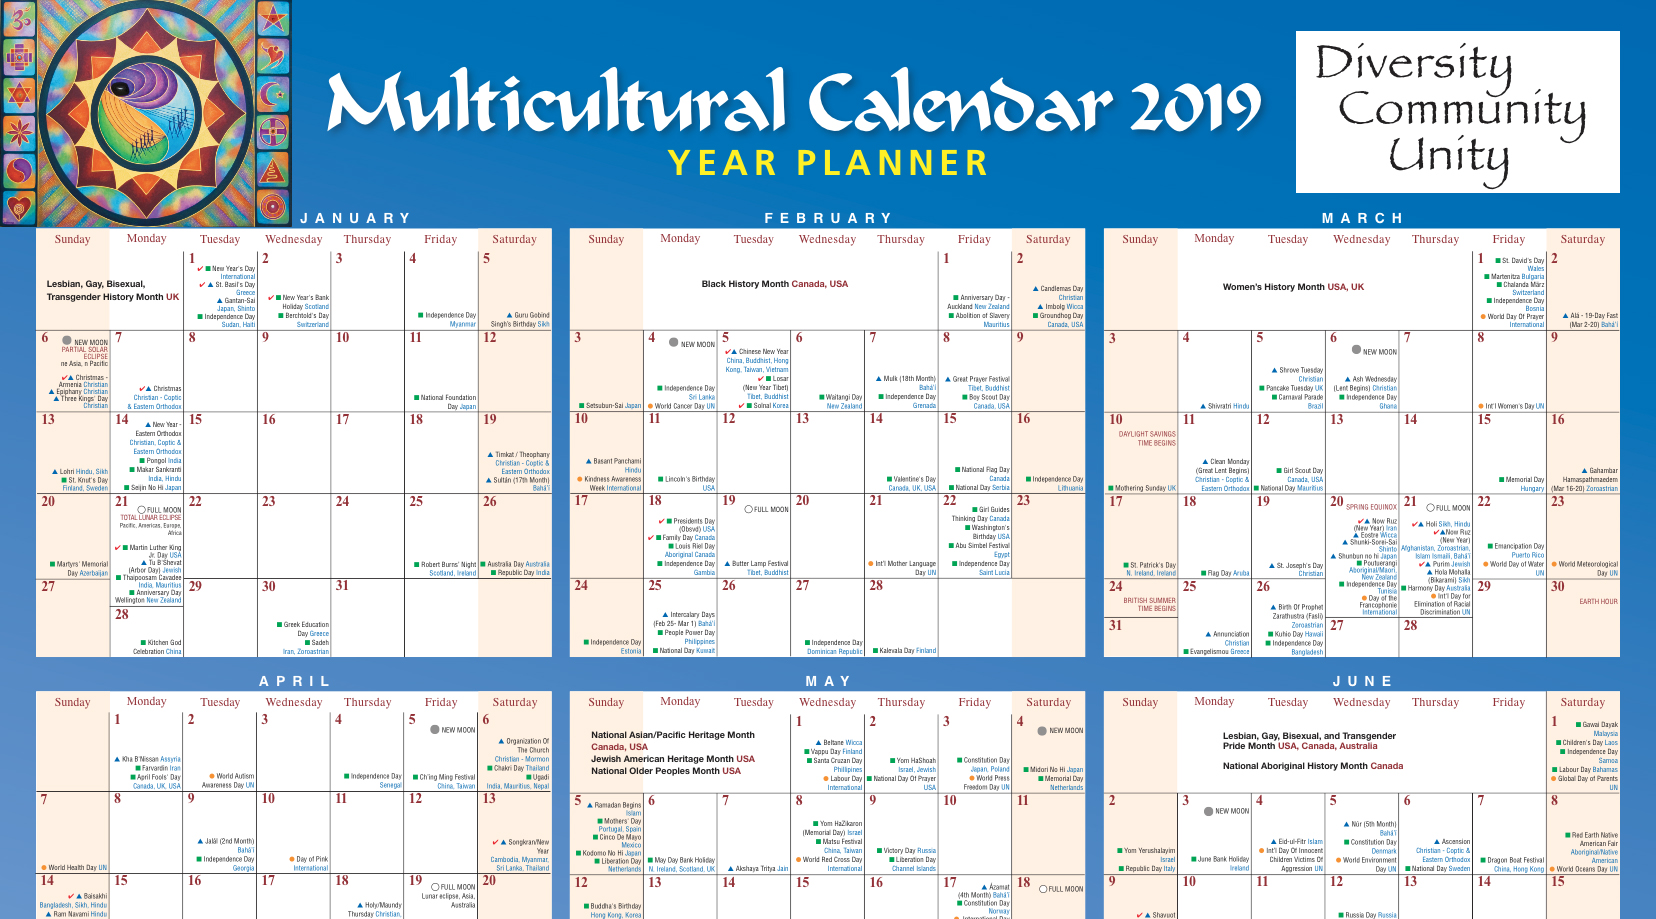 2017 Multicultural Calendar Poster / Diversity Calendar Poster